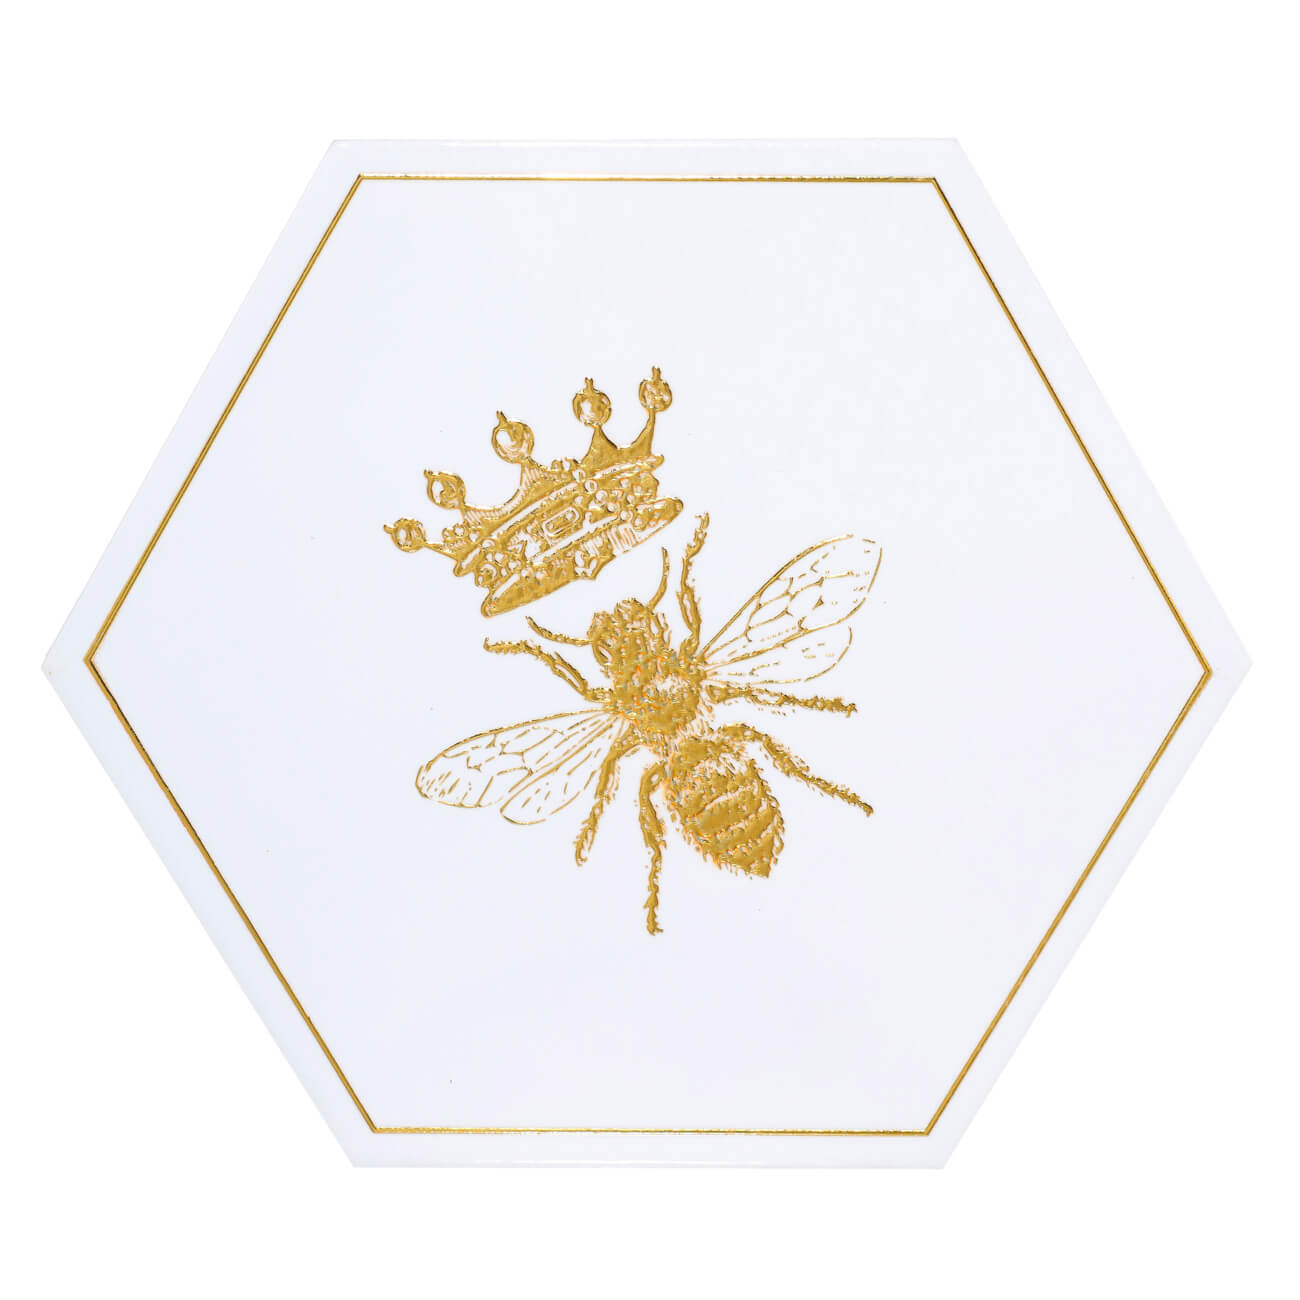 Подставка под горячее, 20 см, керамика/пробка, шестиугольная, белая, Королевская пчела, Honey габонская шестиугольная плантатор 100x90x100 см